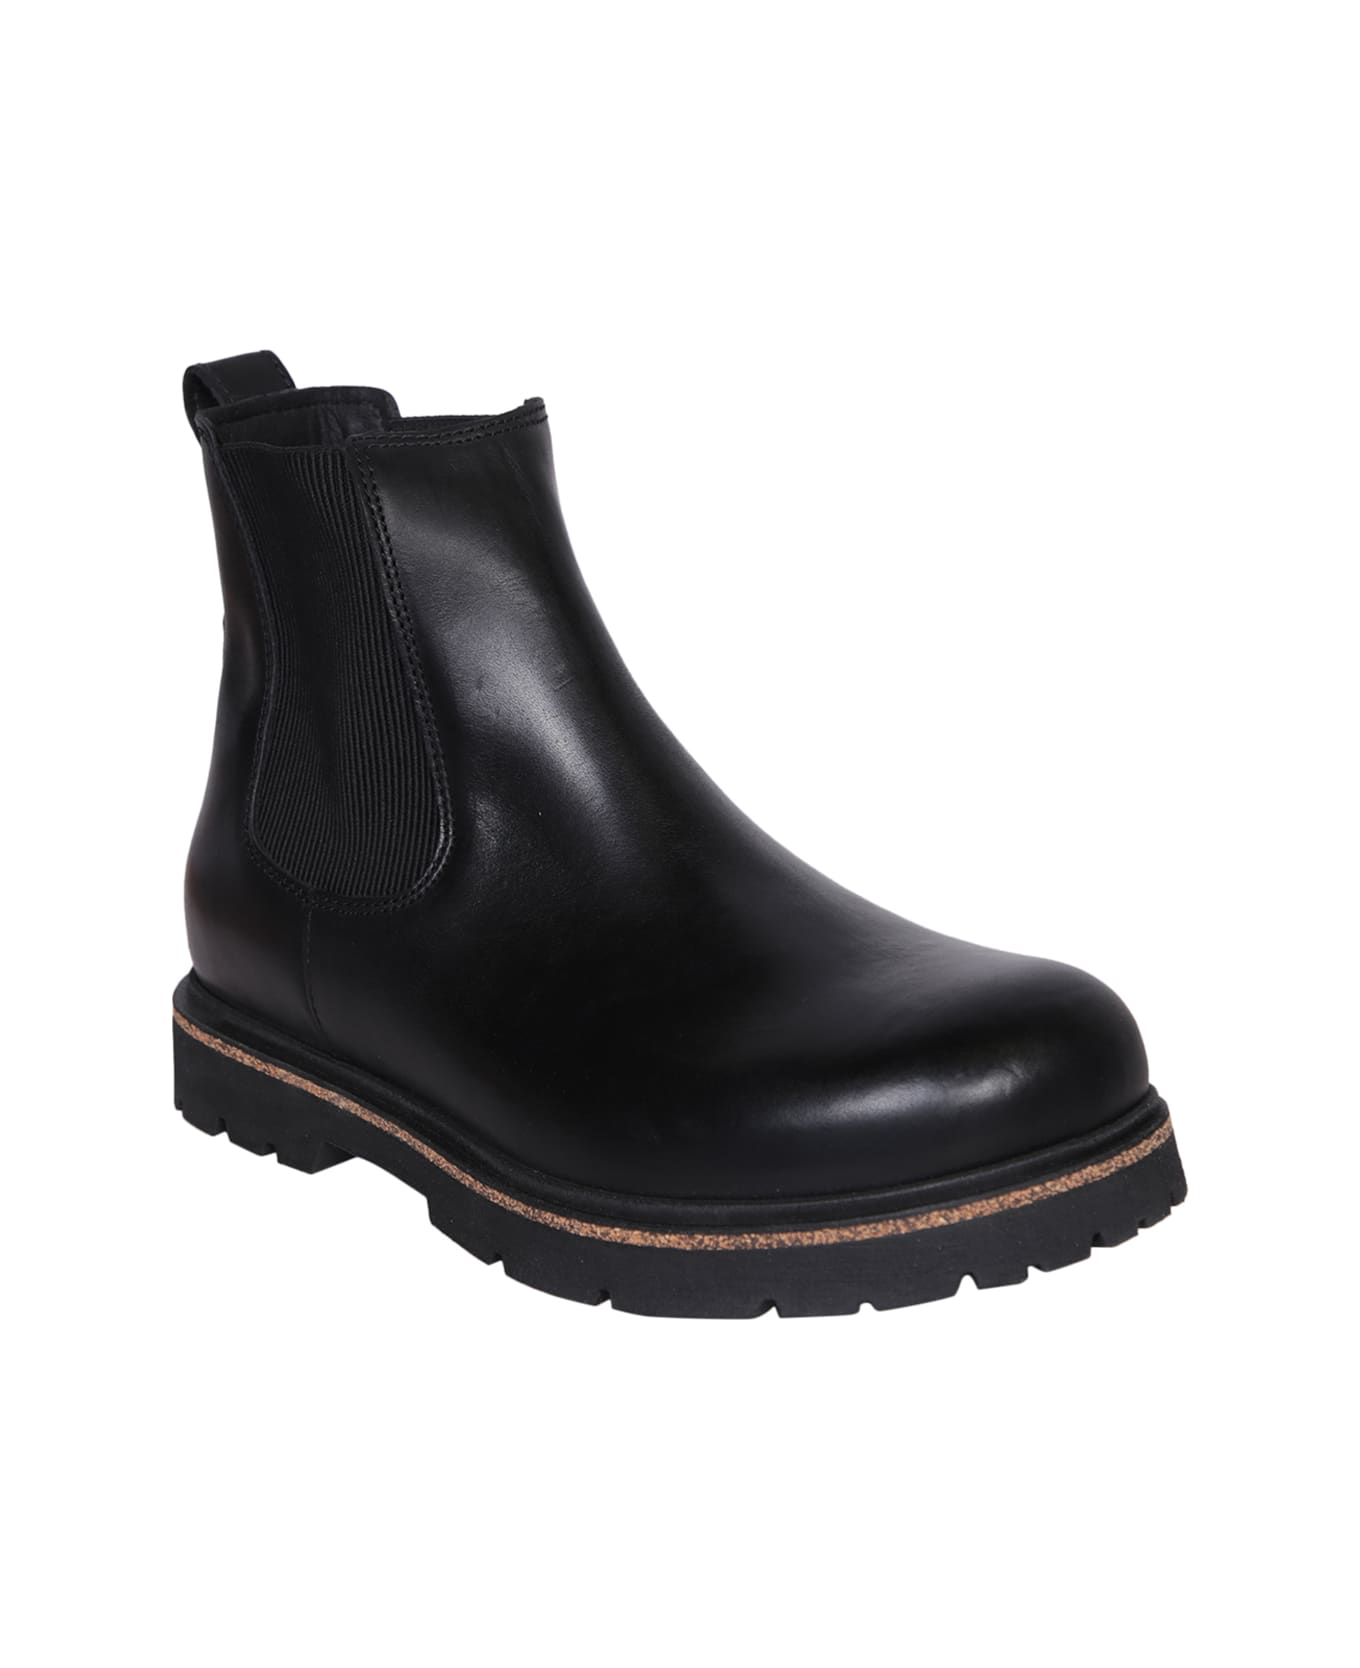 Birkenstock Highwood Combat Boots In Black Leather - Black